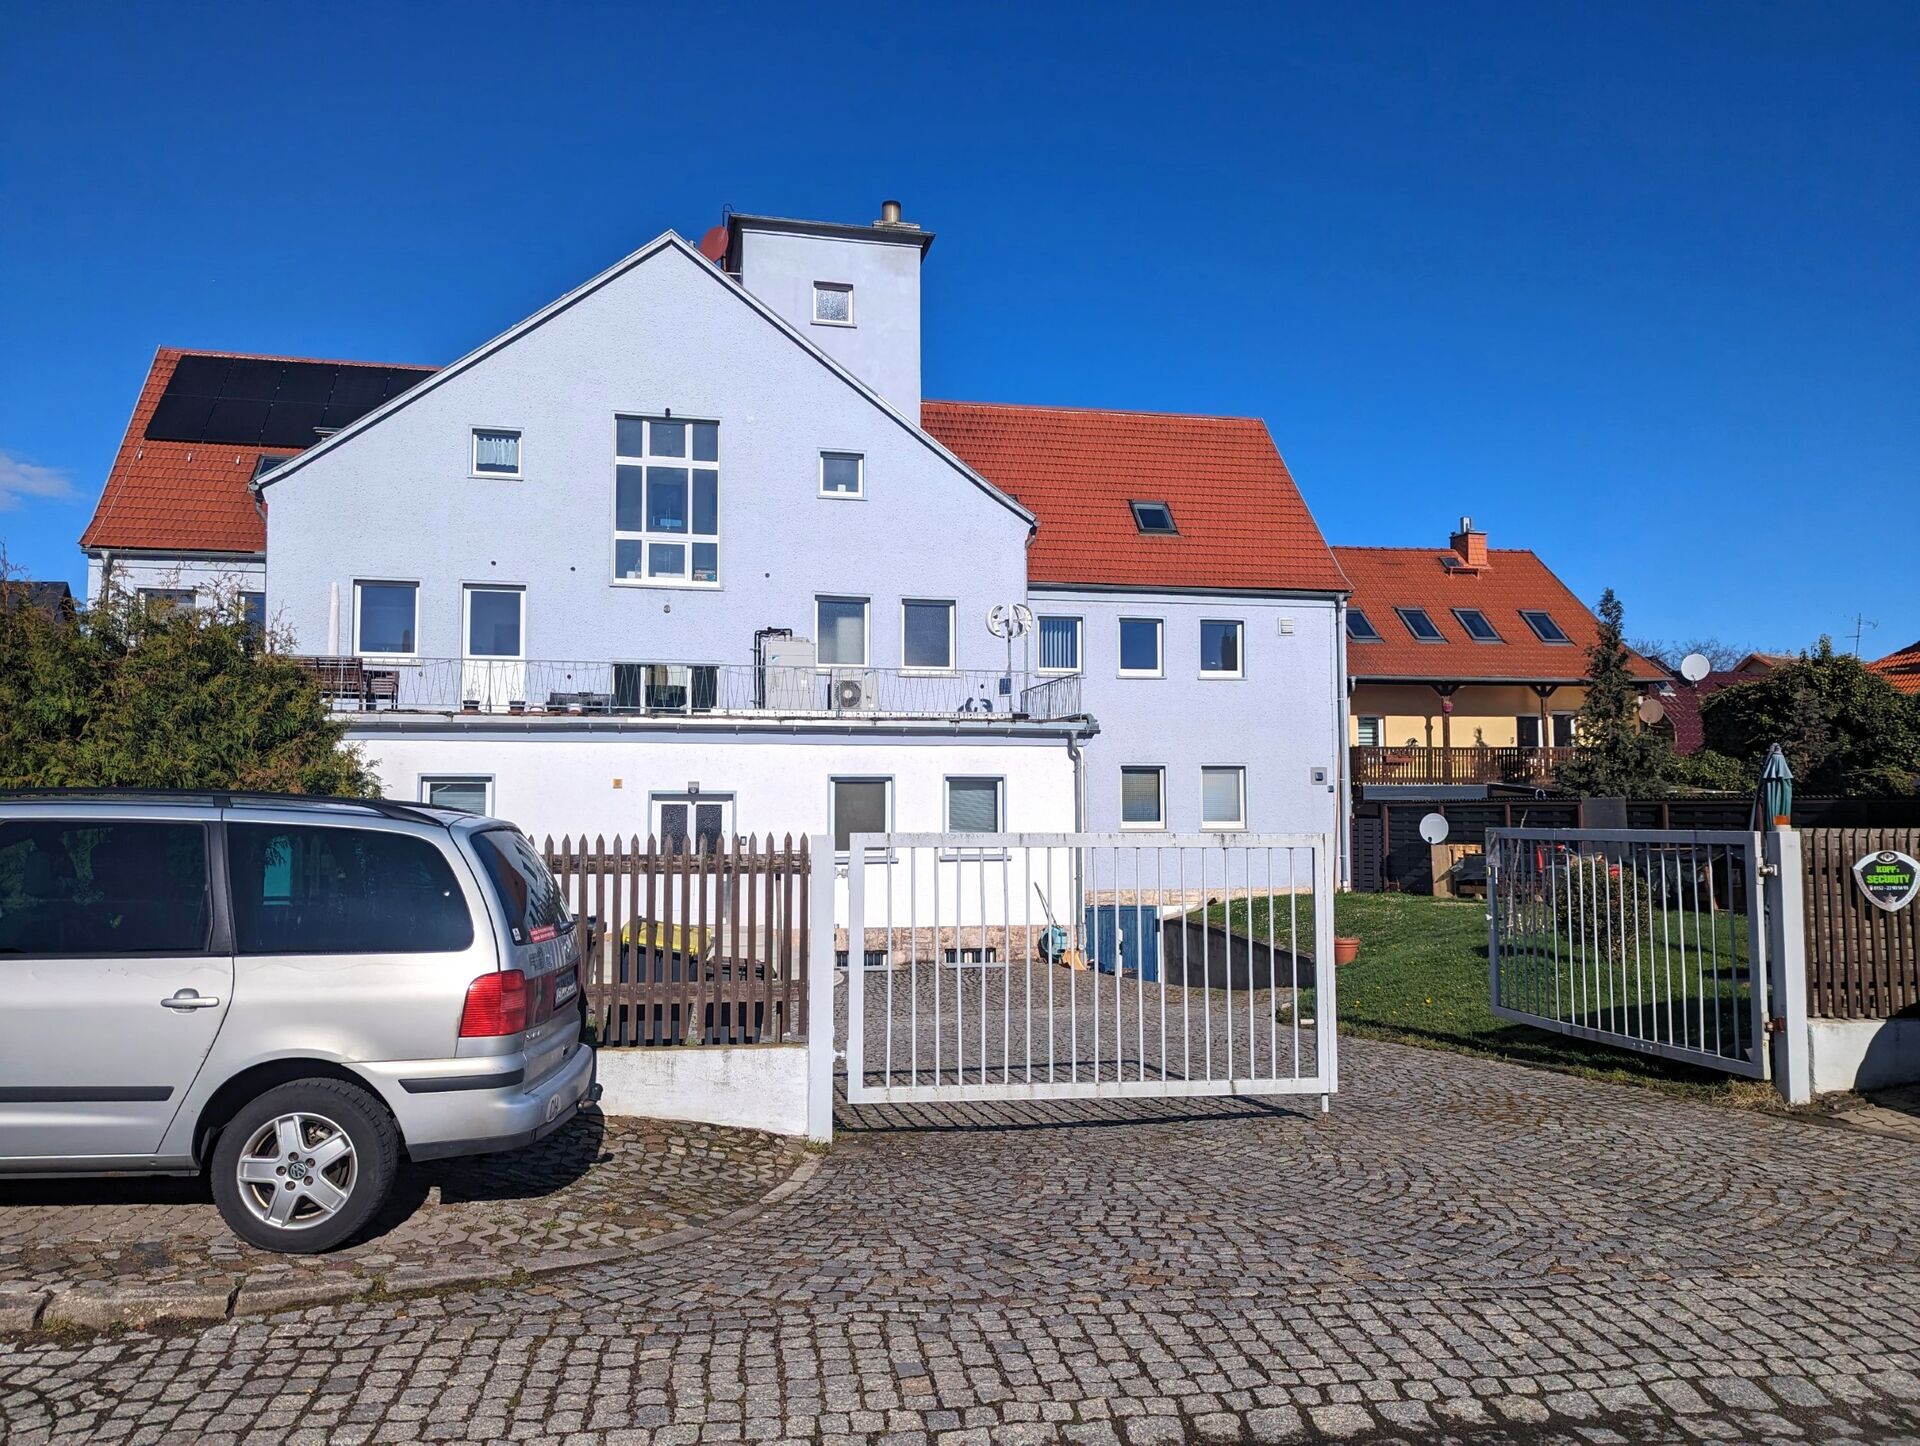 Wohn- / Geschäftshaus mit 2 Loftwohnungen - in Ichtershausen in Amt Wachsenburg